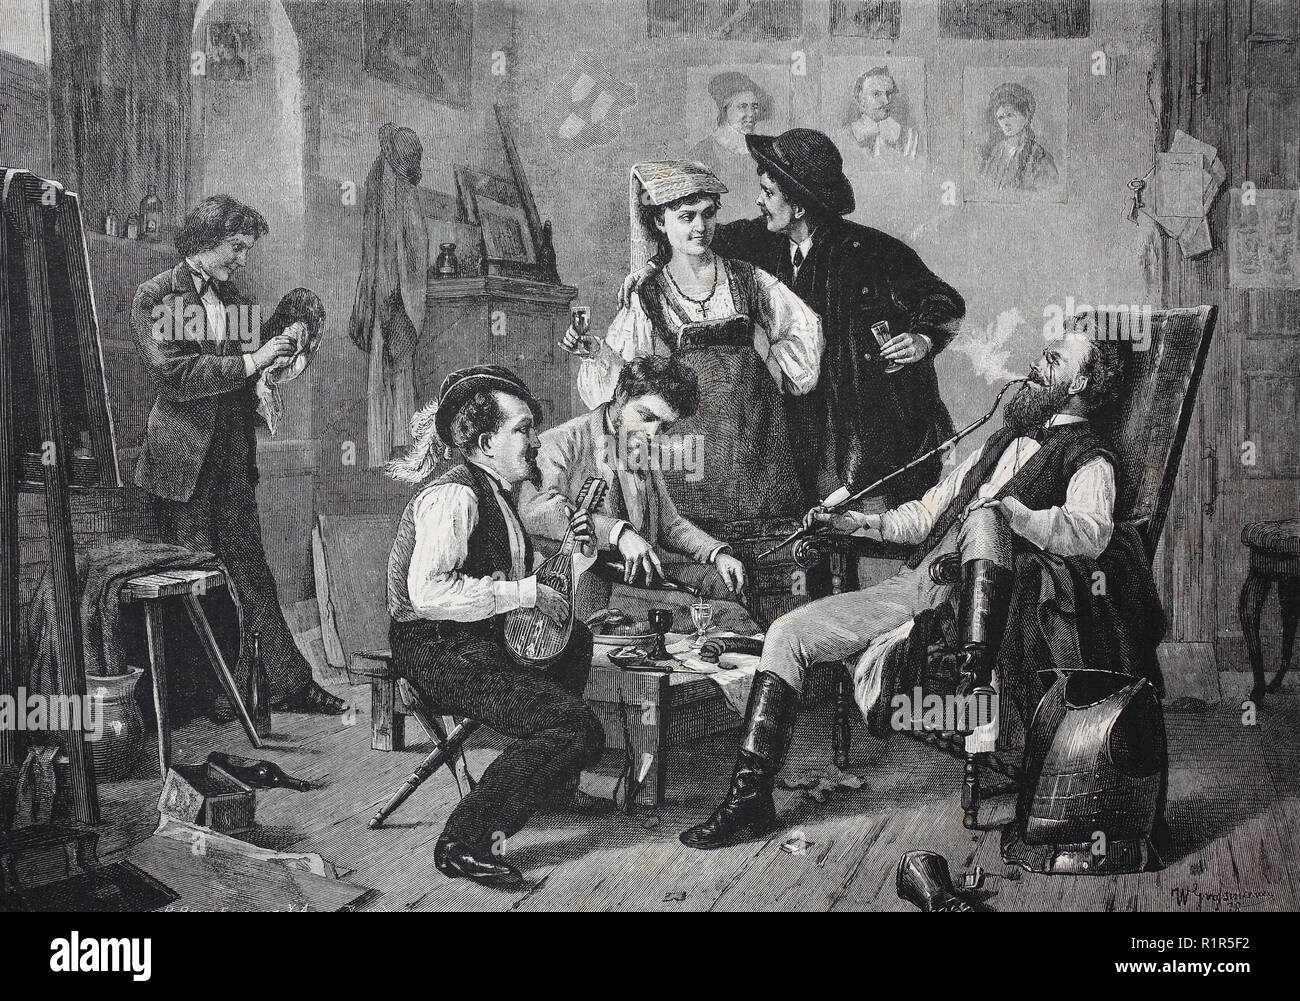 Digital verbesserte Reproduktion, nachdem die Arbeit Atmosphäre mit einer vornehmen Familie, mit House Musik, Wein und Tabak Pfeife, original Drucken aus dem Jahr 1880 Stockfoto